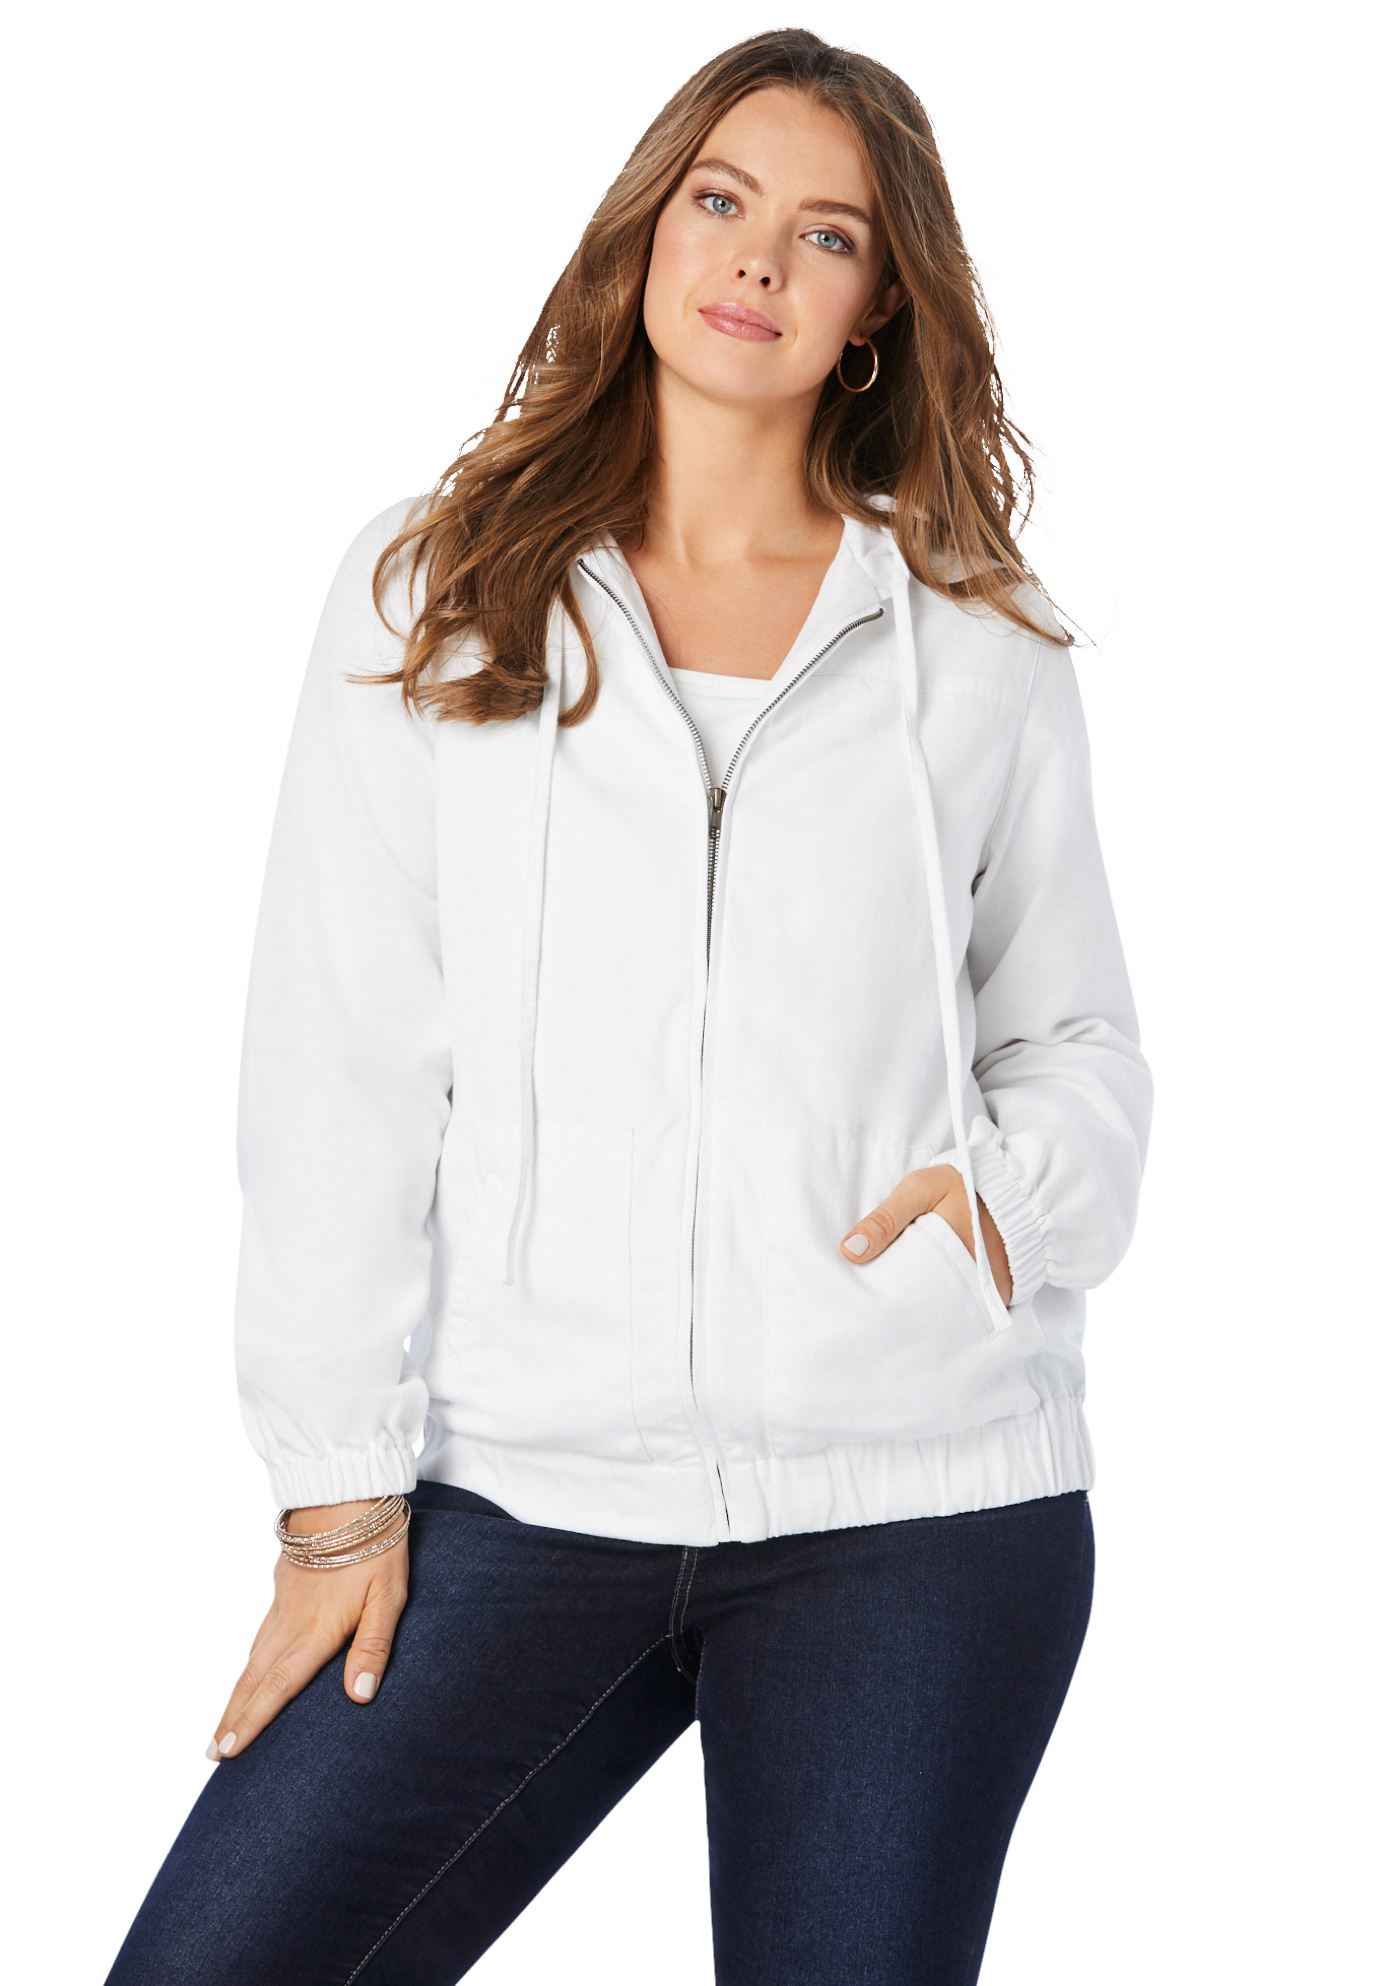 Roaman's Women's Plus Size Cotton Complete Zip-Up Hoodie Denim Jacket - image 1 of 5